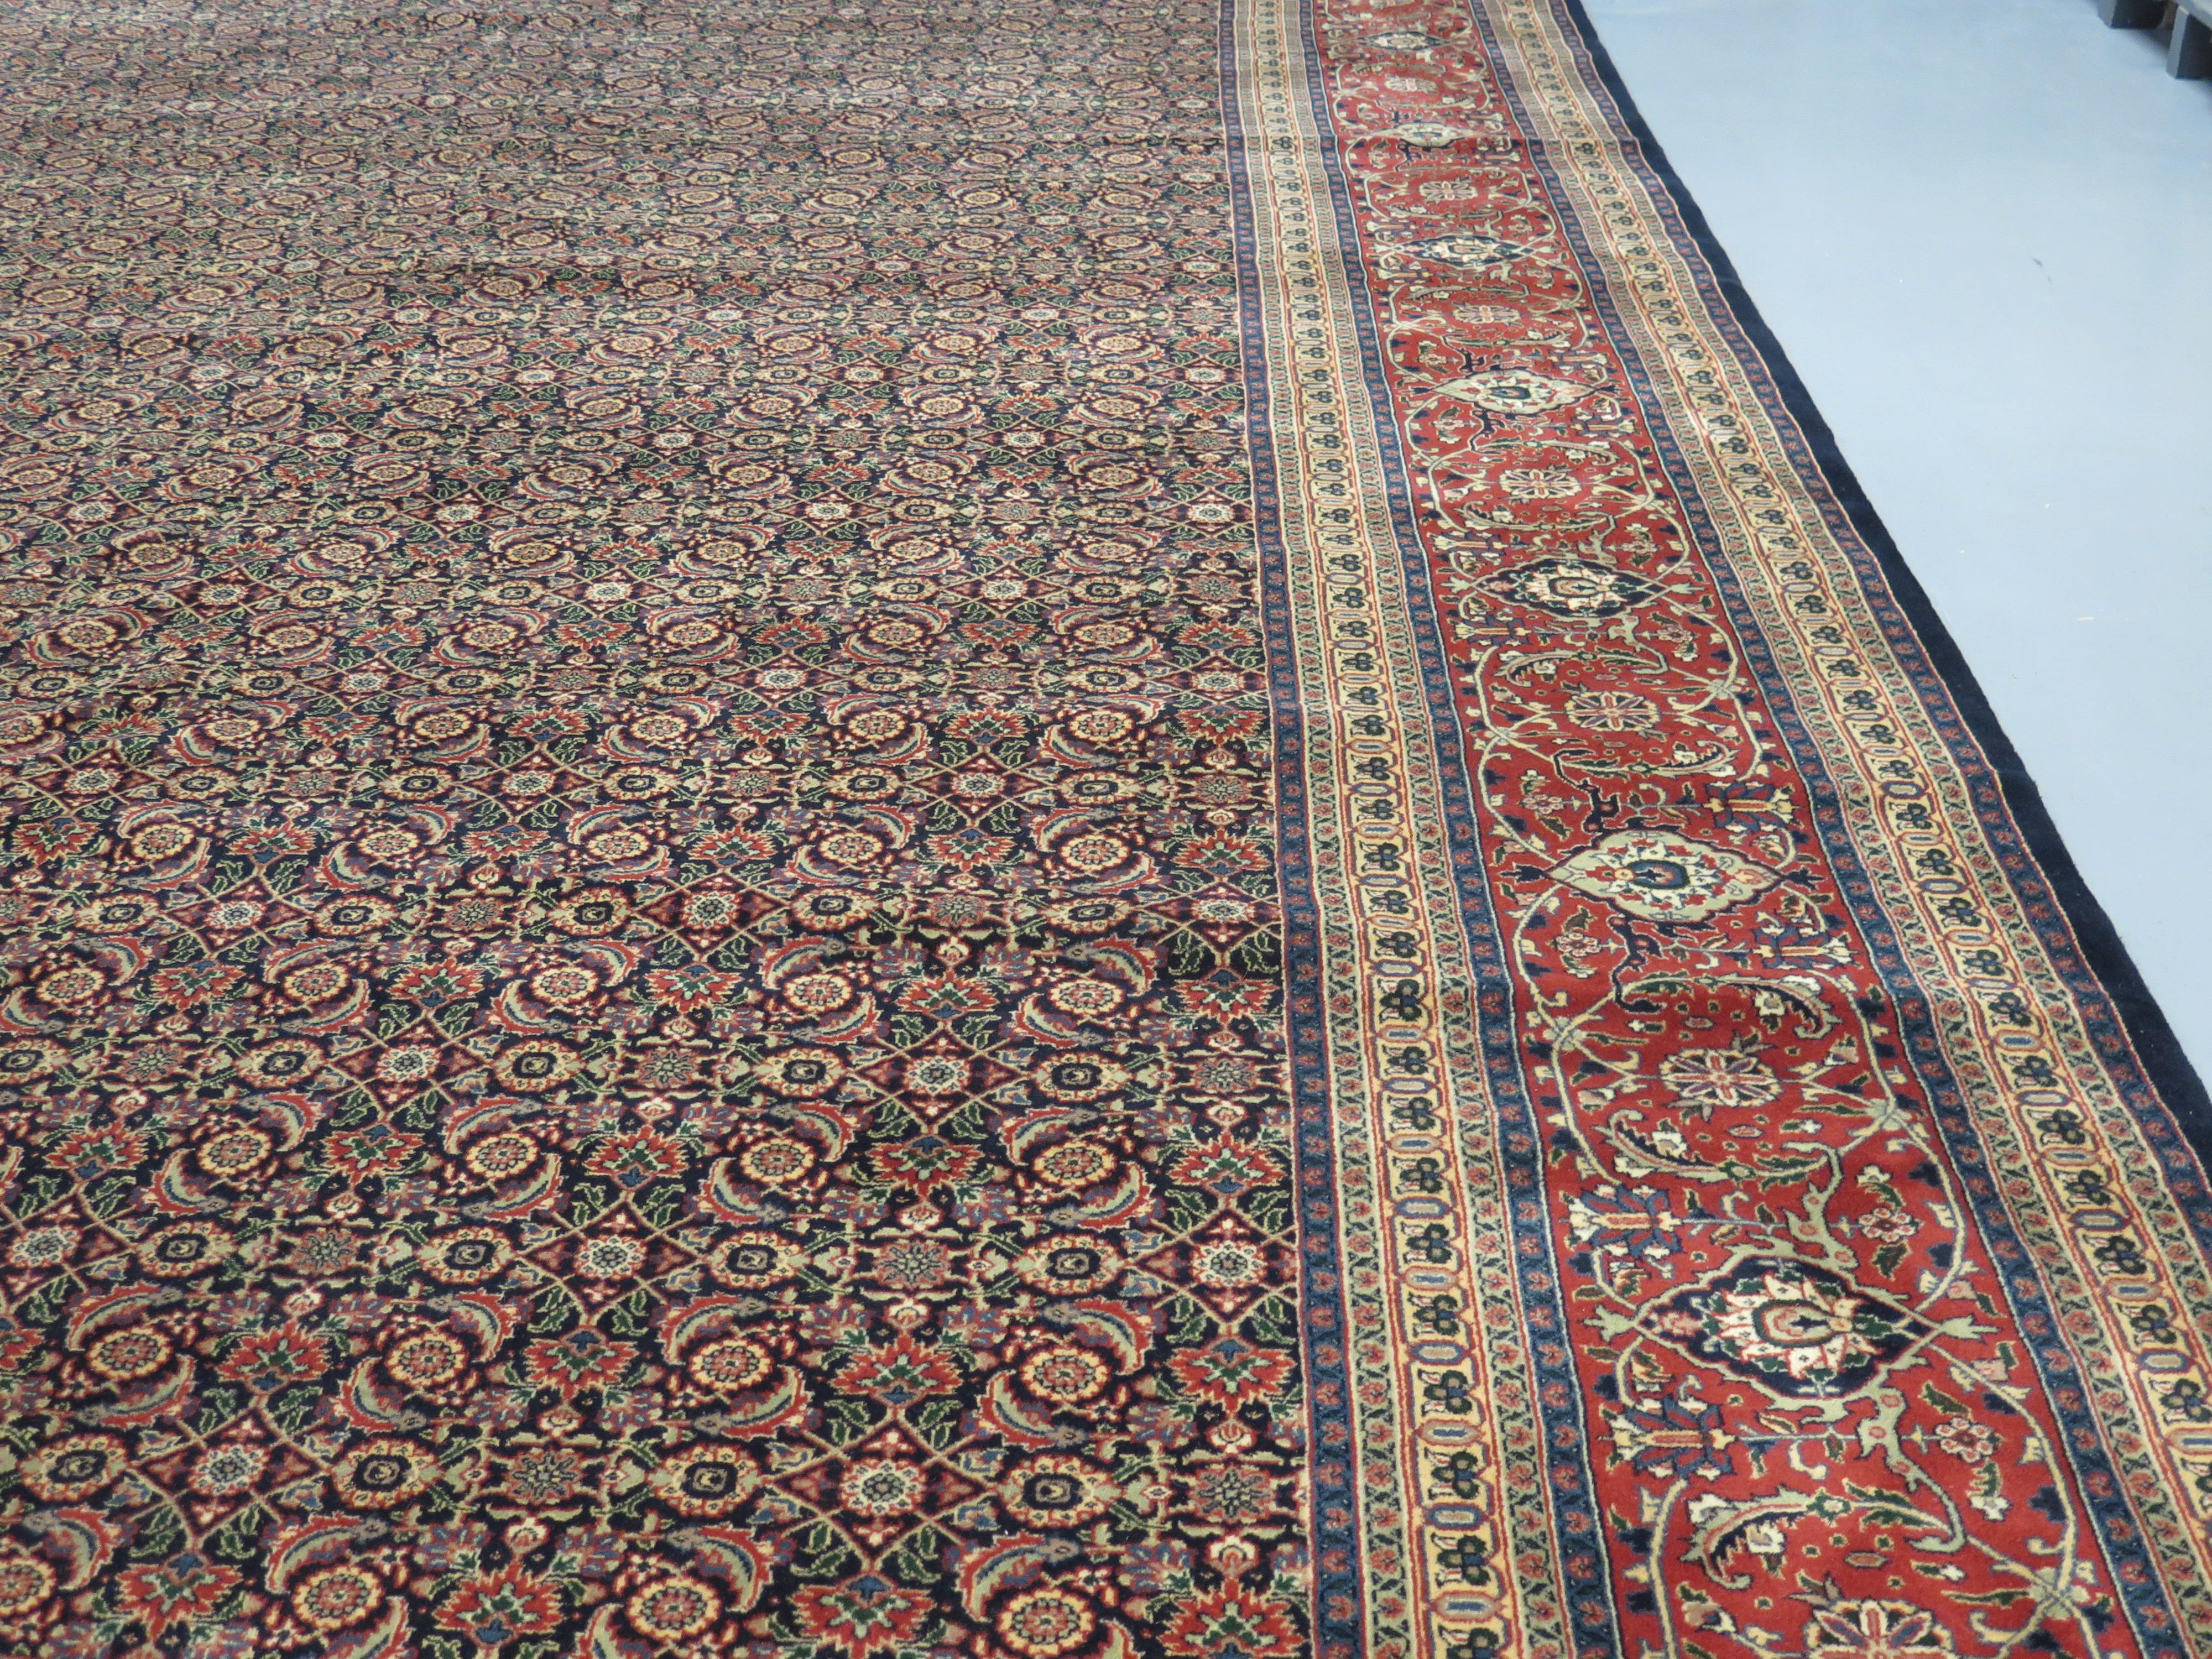 Bereits im 16. Jahrhundert siedelten sich persische Knüpfer in Indien an, die zunächst in vom Hof gesponserten Werkstätten hochwertige Teppiche für den Moguladel herstellten. Diese Tradition wurde über Jahrhunderte hinweg fortgesetzt, wobei indische